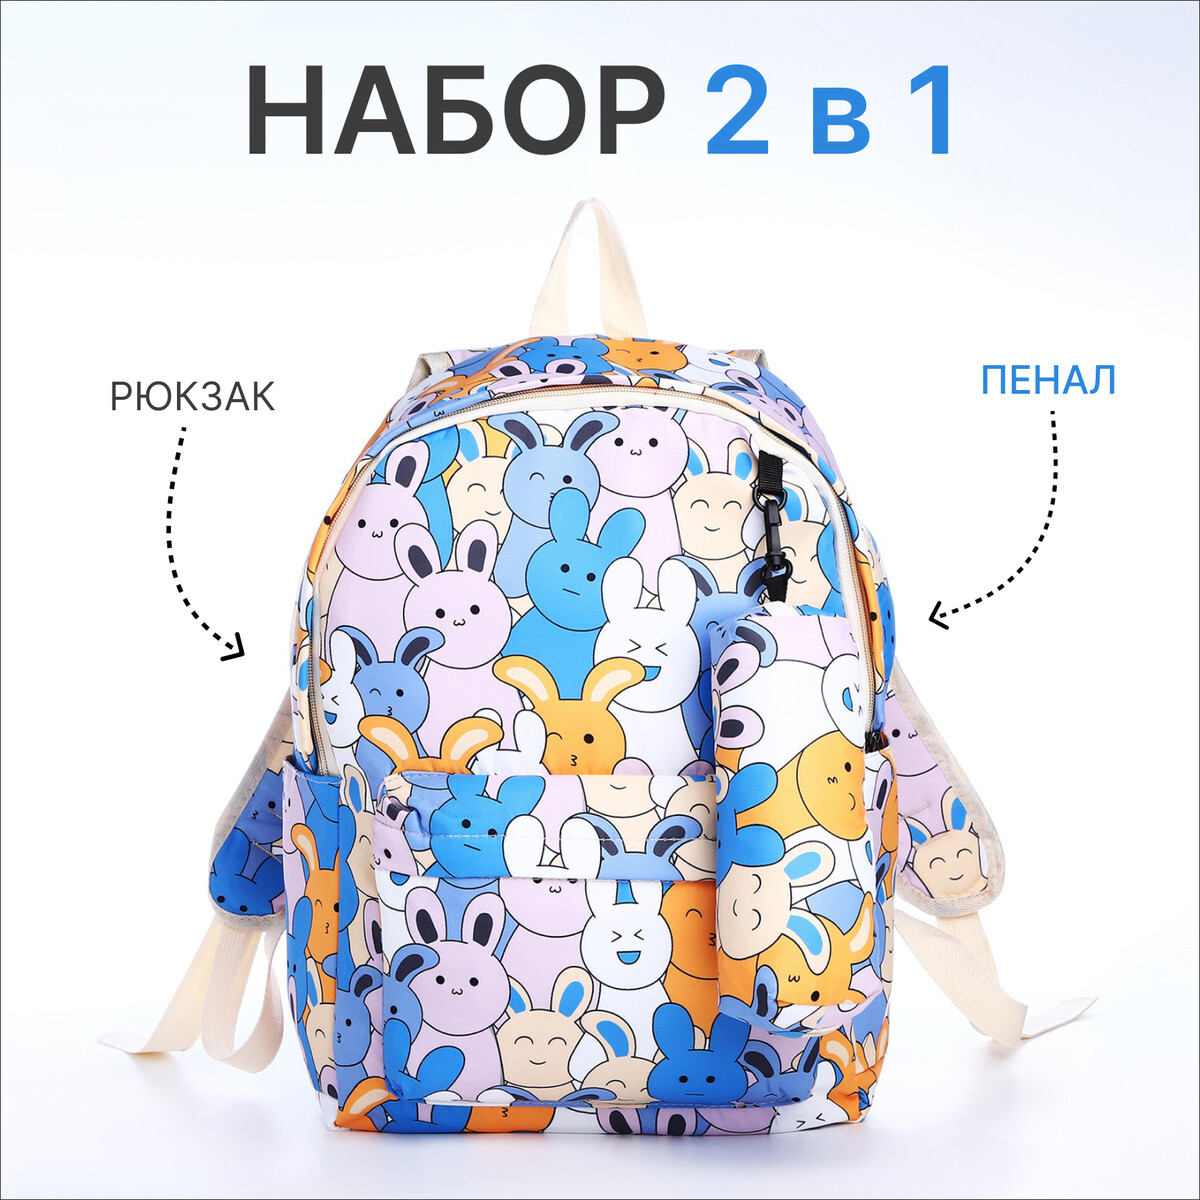 Рюкзак школьный из текстиля на молнии, 3 кармана, пенал, цвет голубой/разноцветный